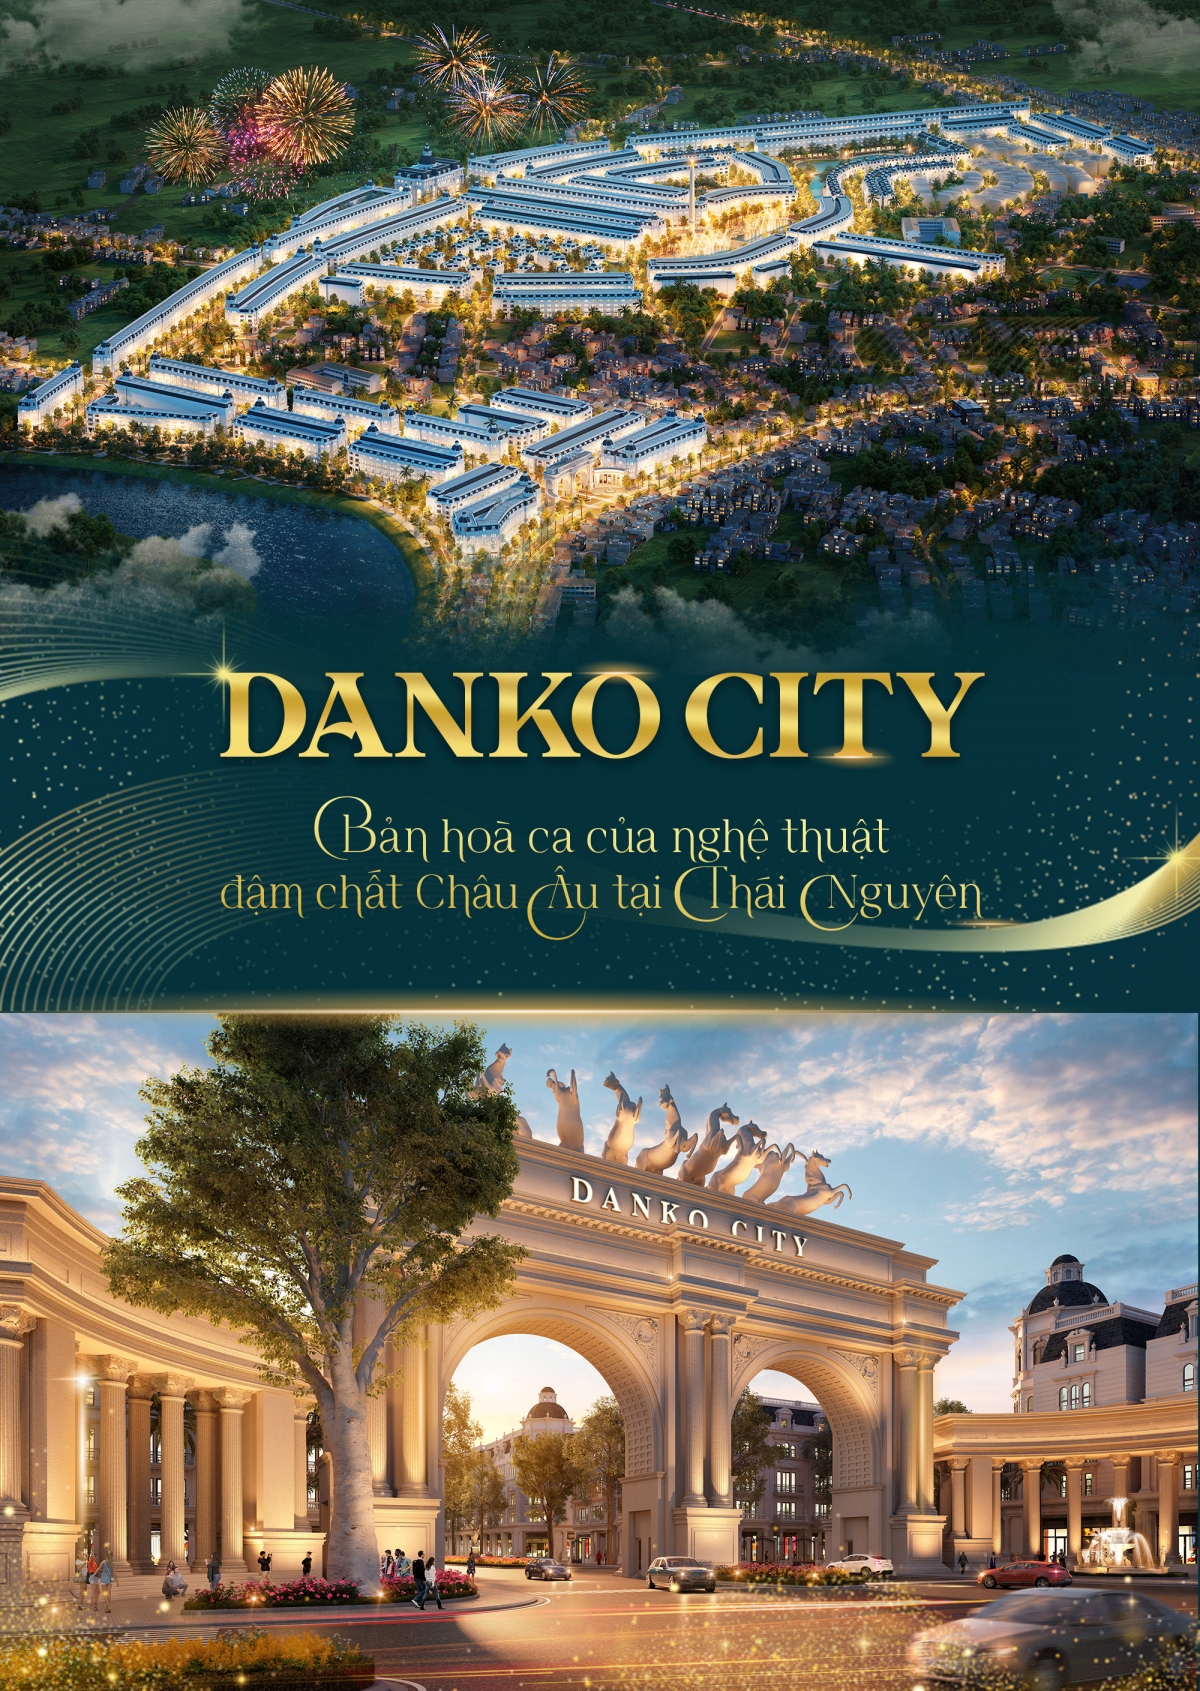 Danko City - Bản hoà ca của nghệ thuật đậm chất Châu Âu tại Thái Nguyên